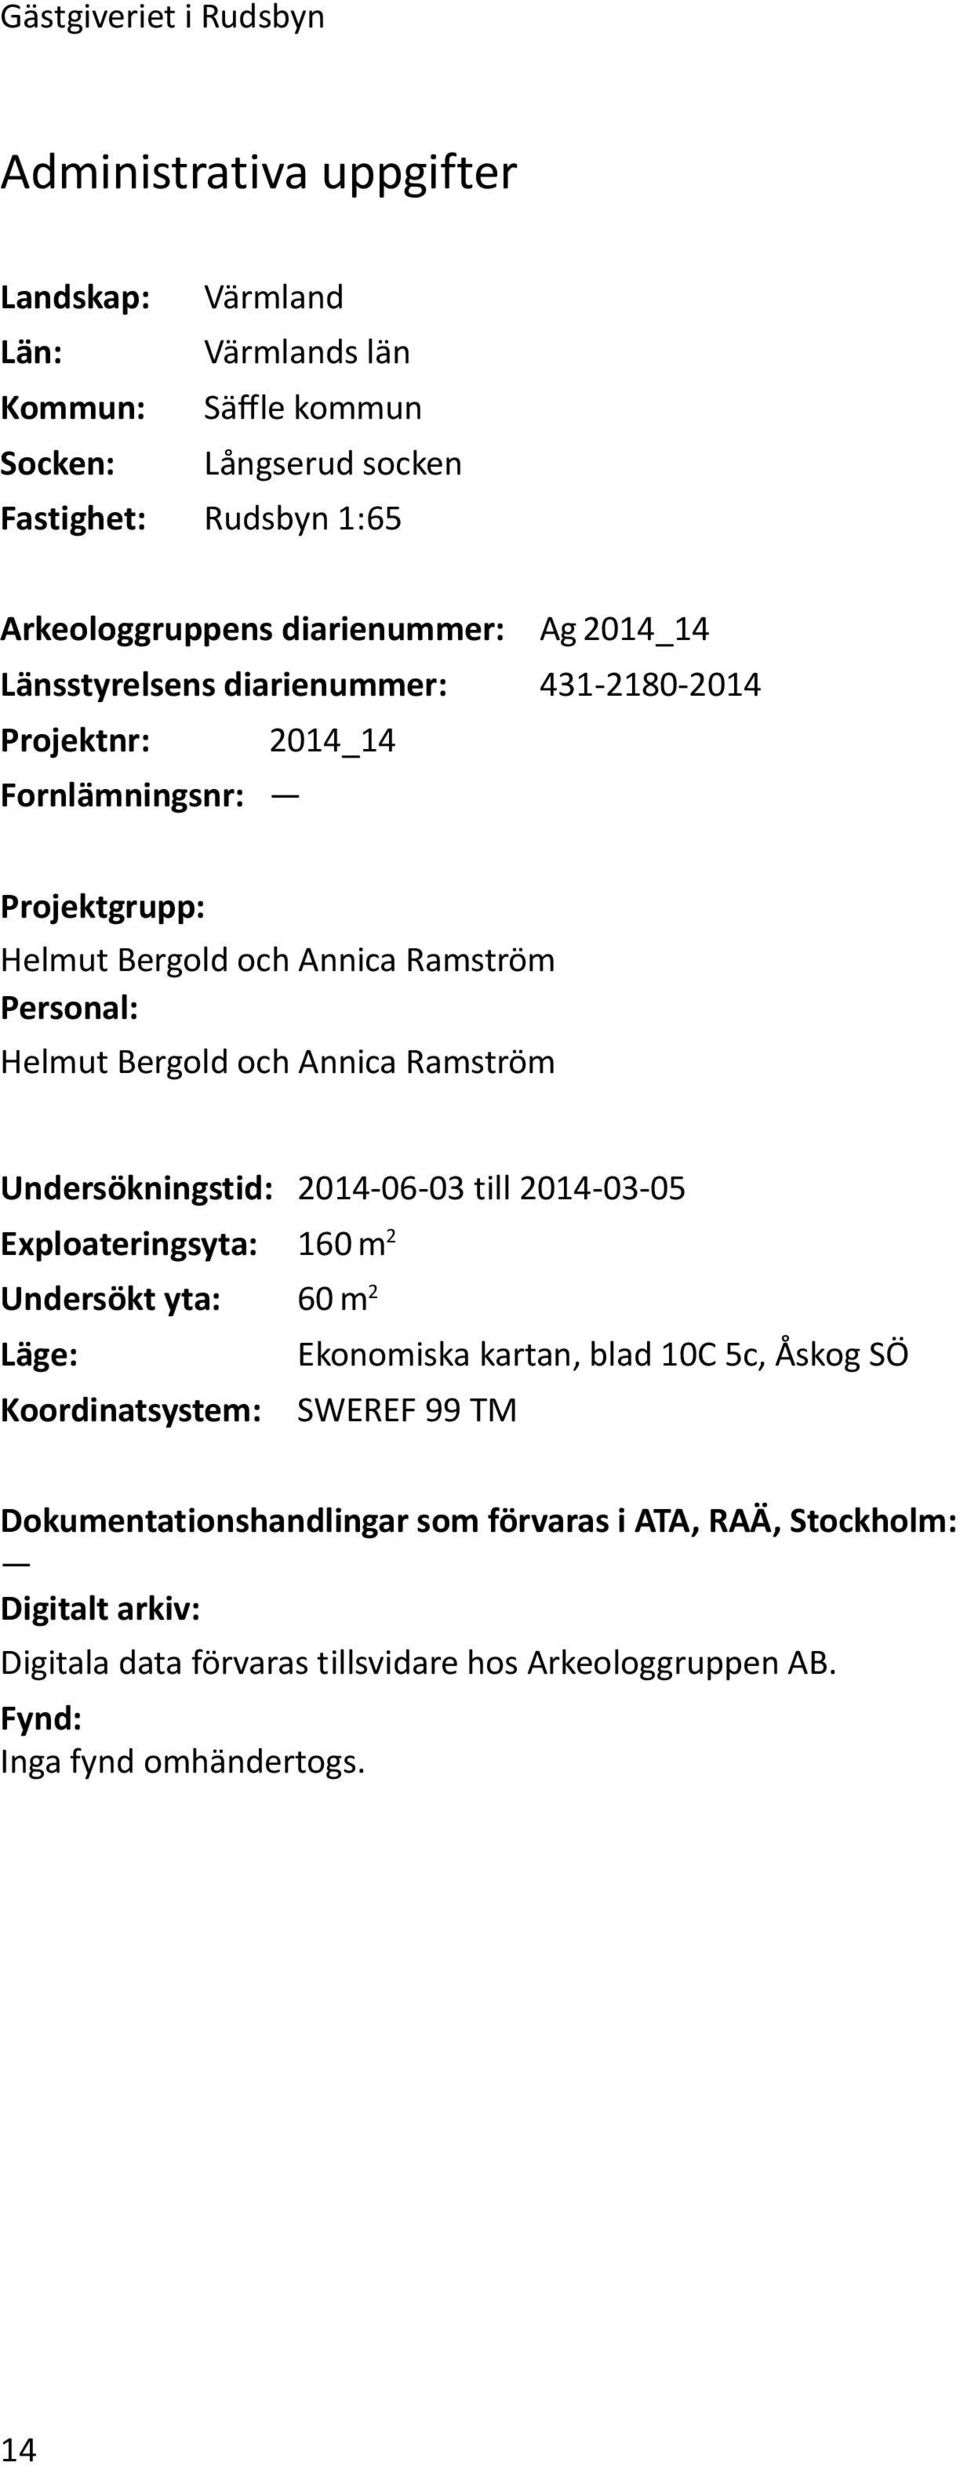 och Annica Ramström Undersökningstid: 2014-06-03 till 2014-03-05 Exploateringsyta: 160 m 2 Undersökt yta: 60 m 2 Läge: Ekonomiska kartan, blad 10C 5c, Åskog SÖ Koordinatsystem: